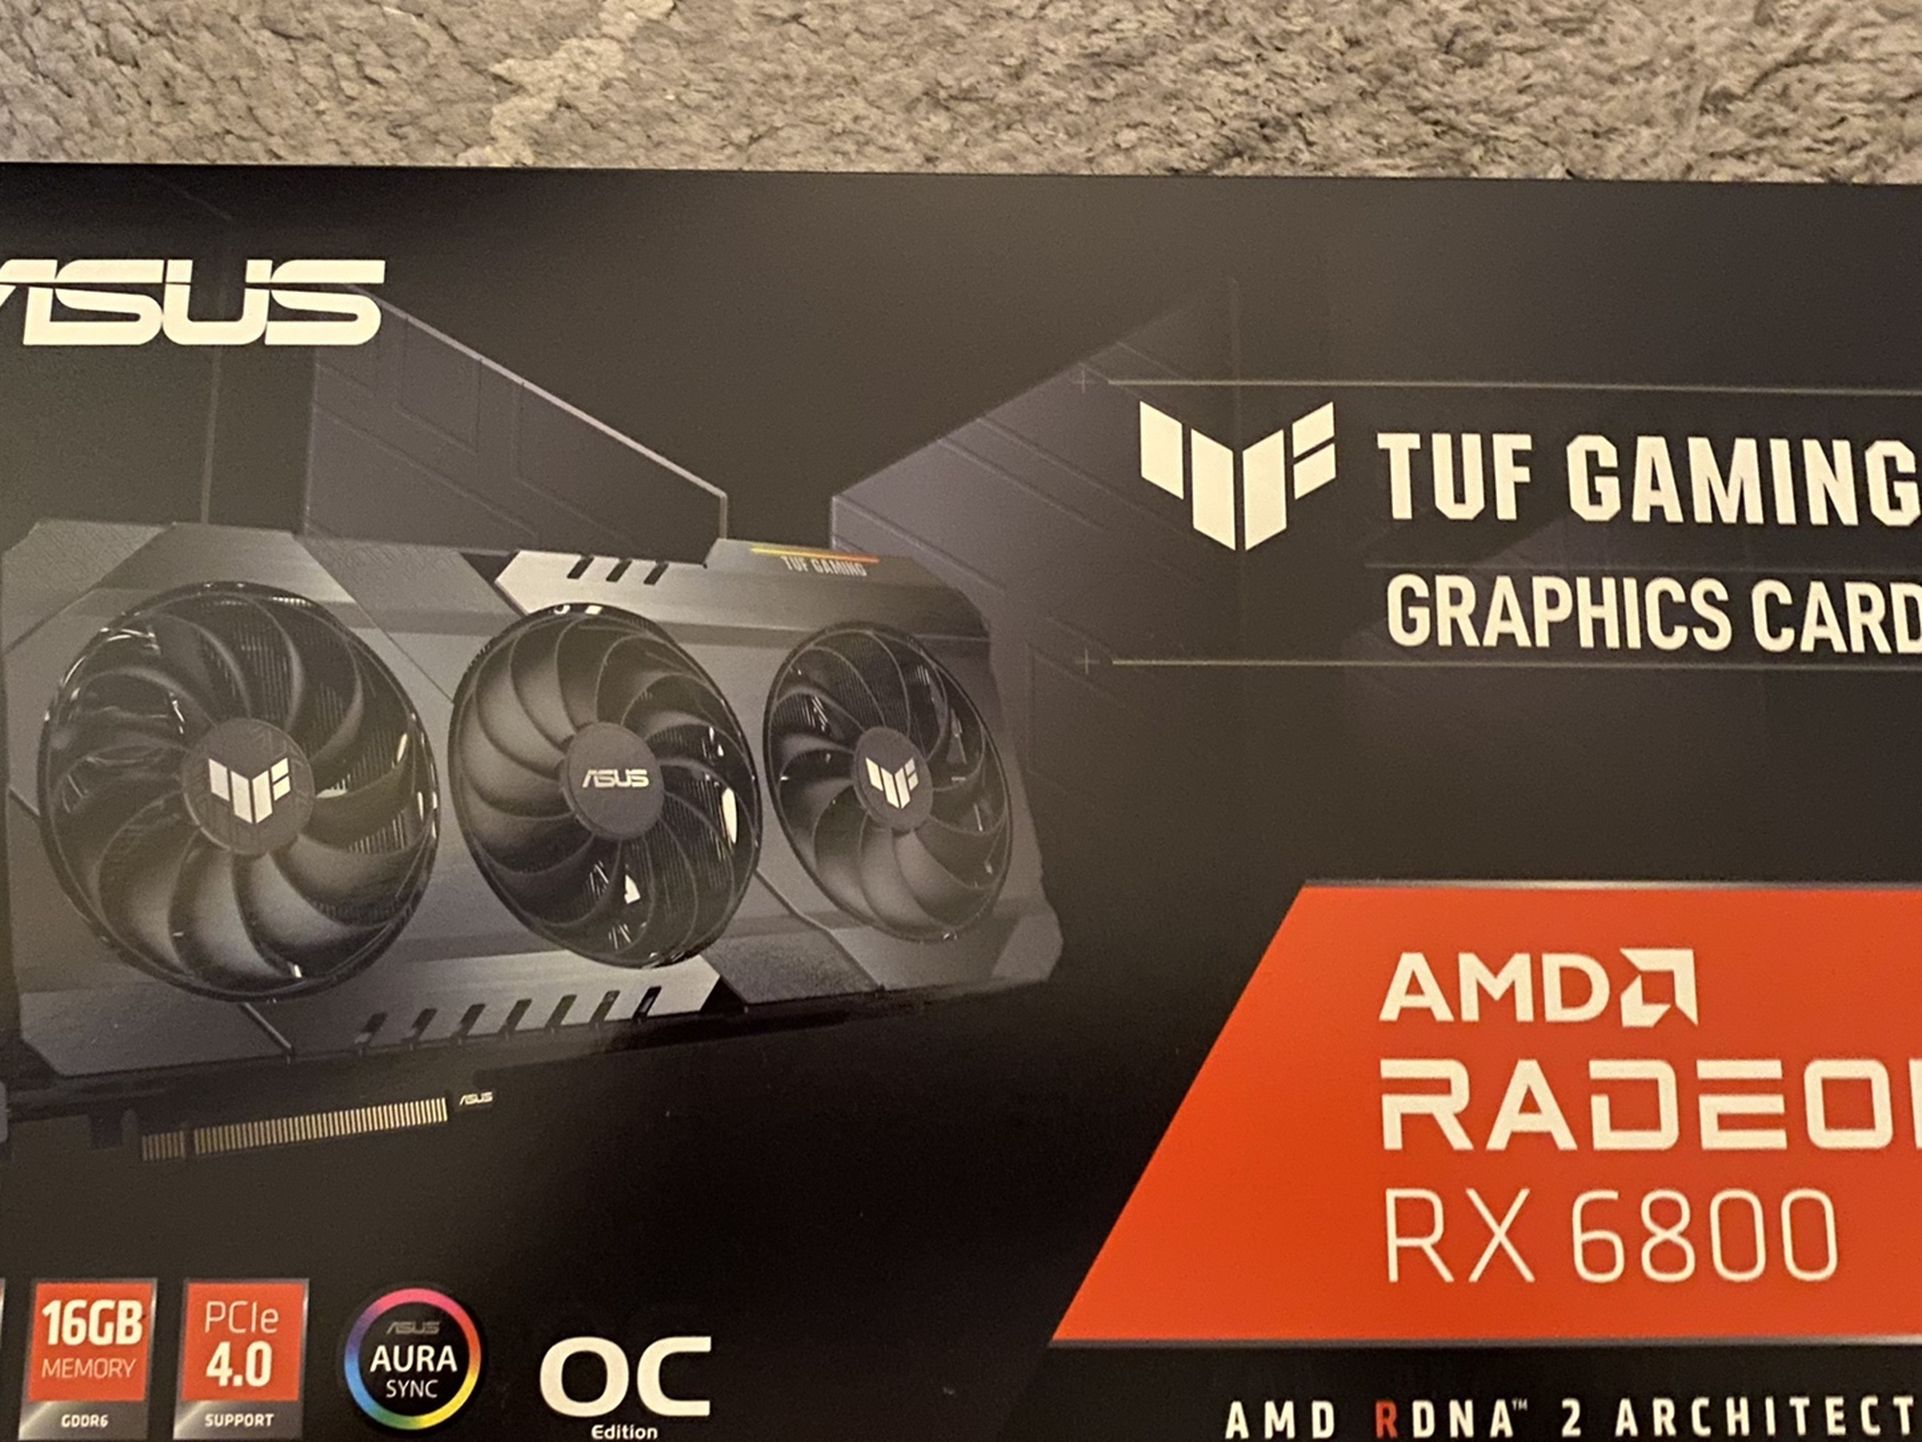 Asus Tuf Gaming Amd Radeon Rx 6800